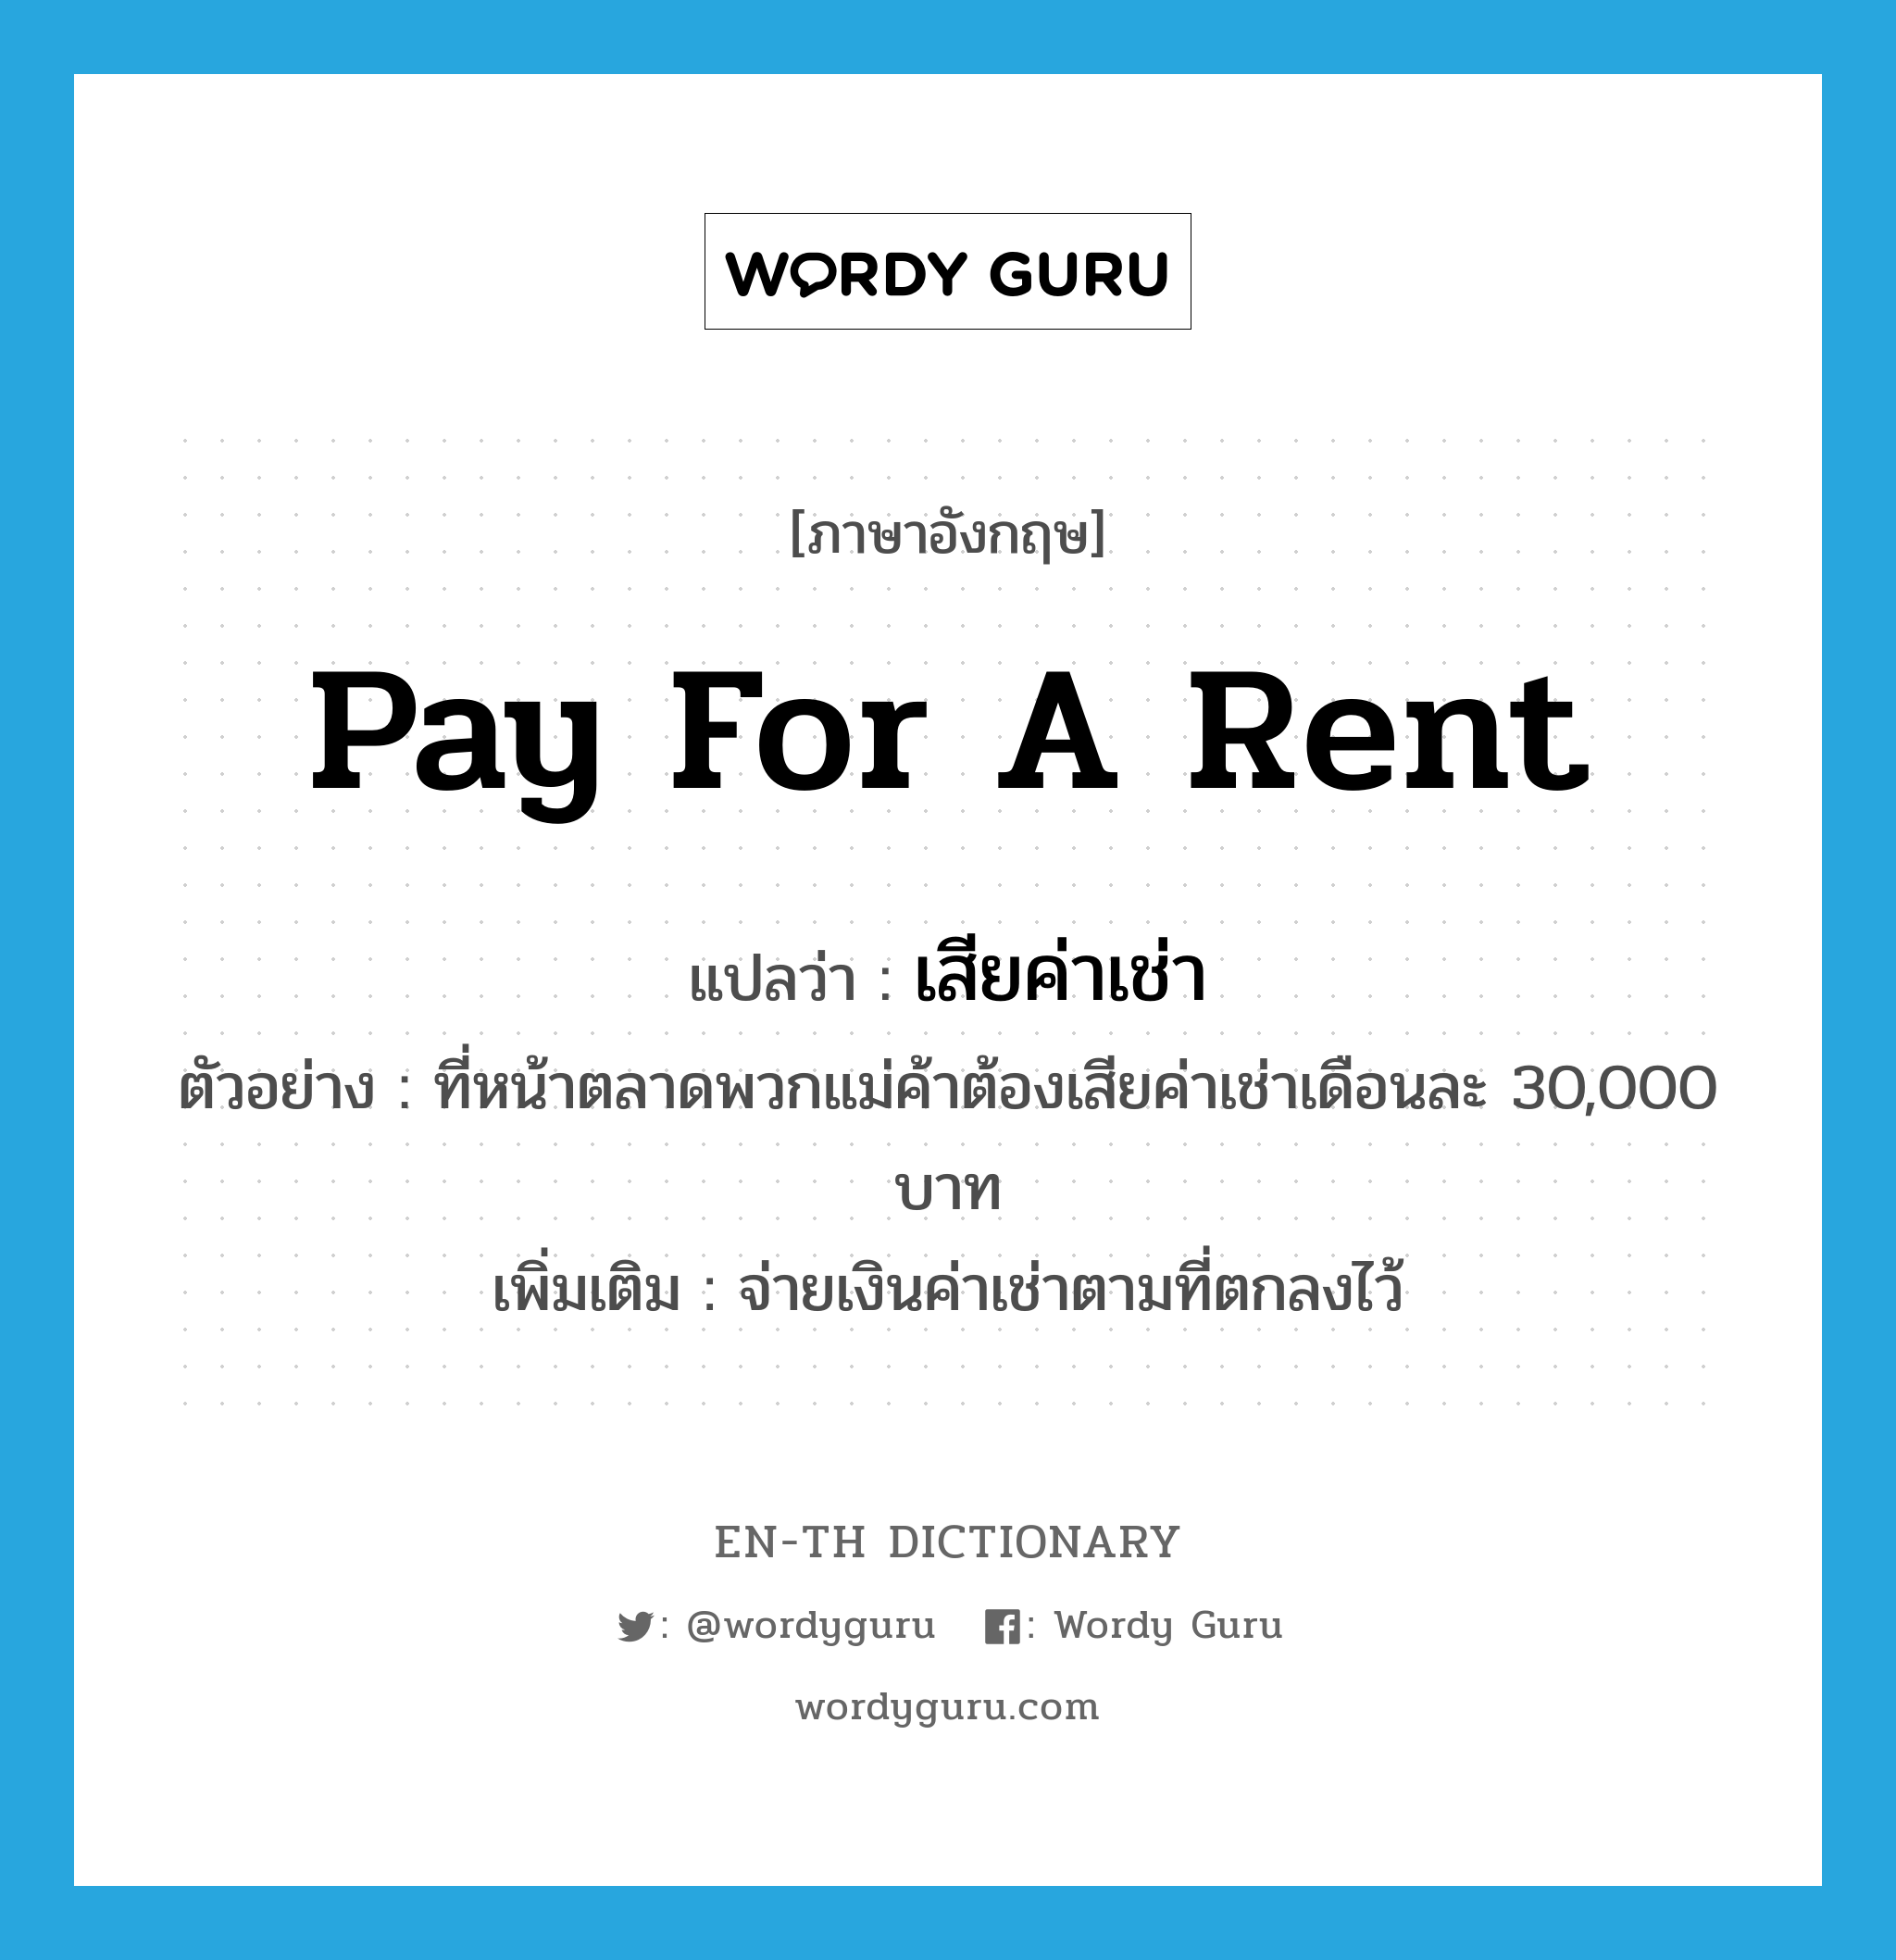 pay for a rent แปลว่า?, คำศัพท์ภาษาอังกฤษ pay for a rent แปลว่า เสียค่าเช่า ประเภท V ตัวอย่าง ที่หน้าตลาดพวกแม่ค้าต้องเสียค่าเช่าเดือนละ 30,000 บาท เพิ่มเติม จ่ายเงินค่าเช่าตามที่ตกลงไว้ หมวด V